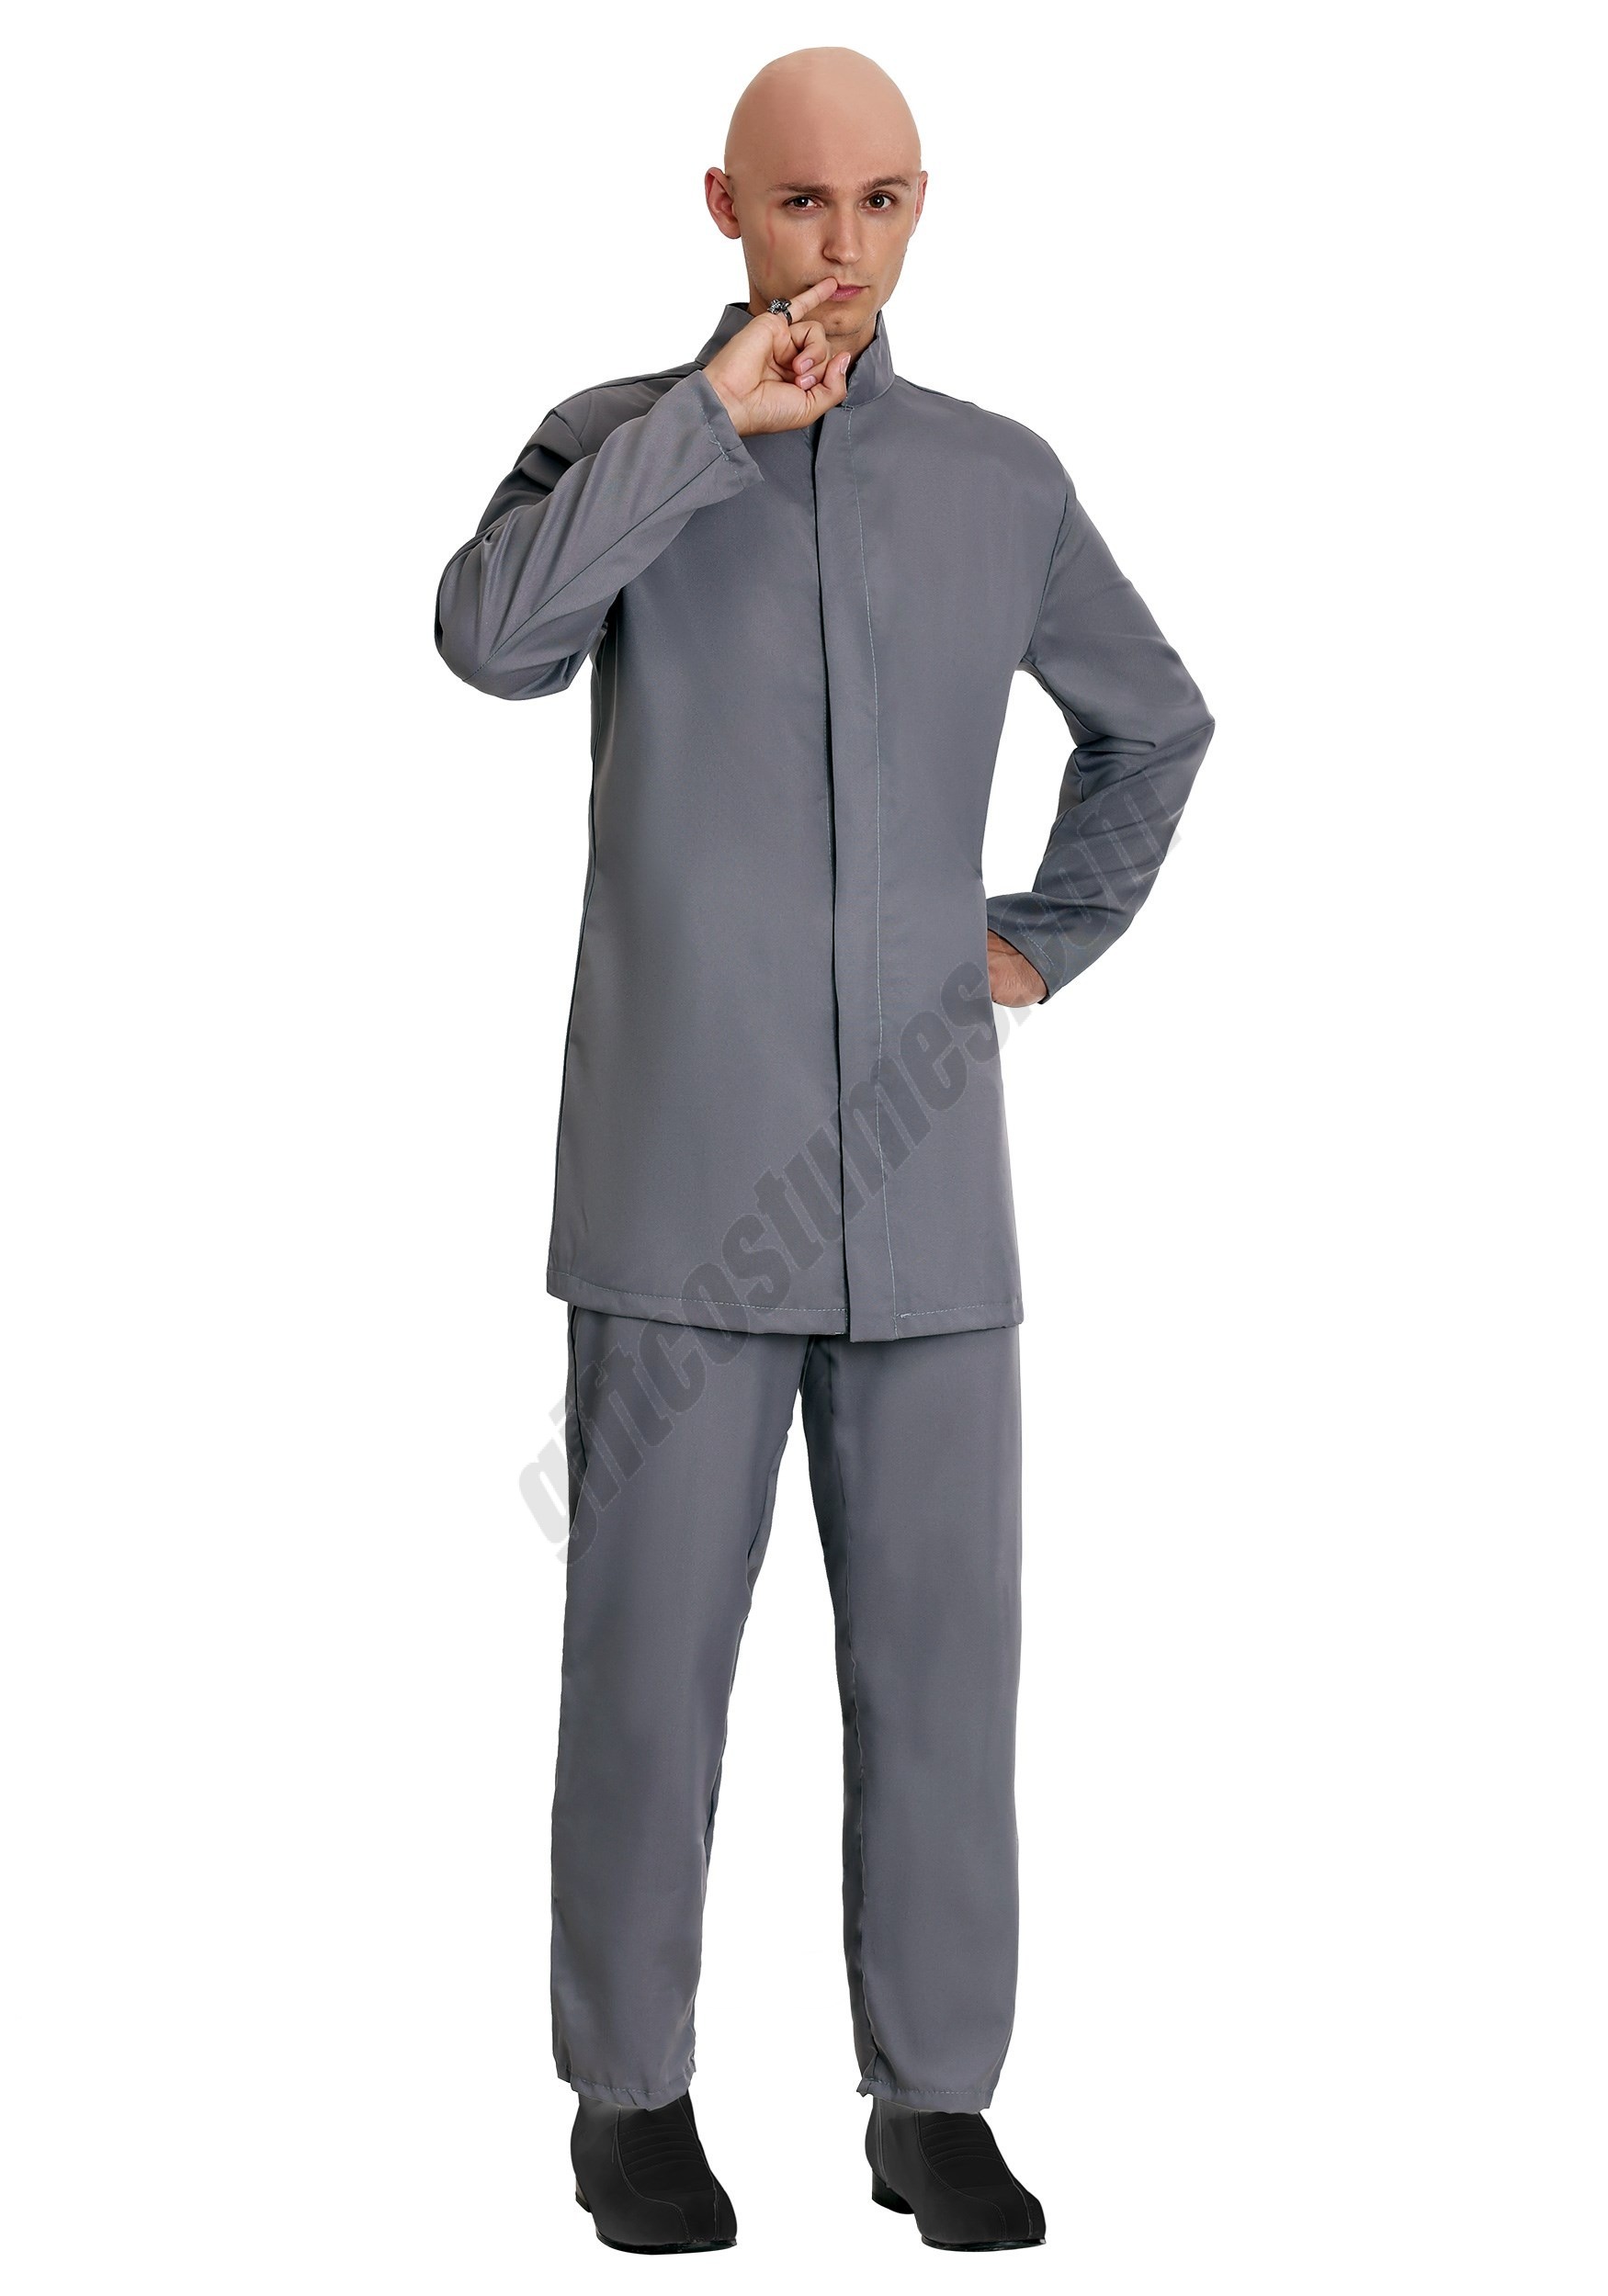 Deluxe Adult Gray Suit Costume - Men's - Deluxe Adult Gray Suit Costume - Men's